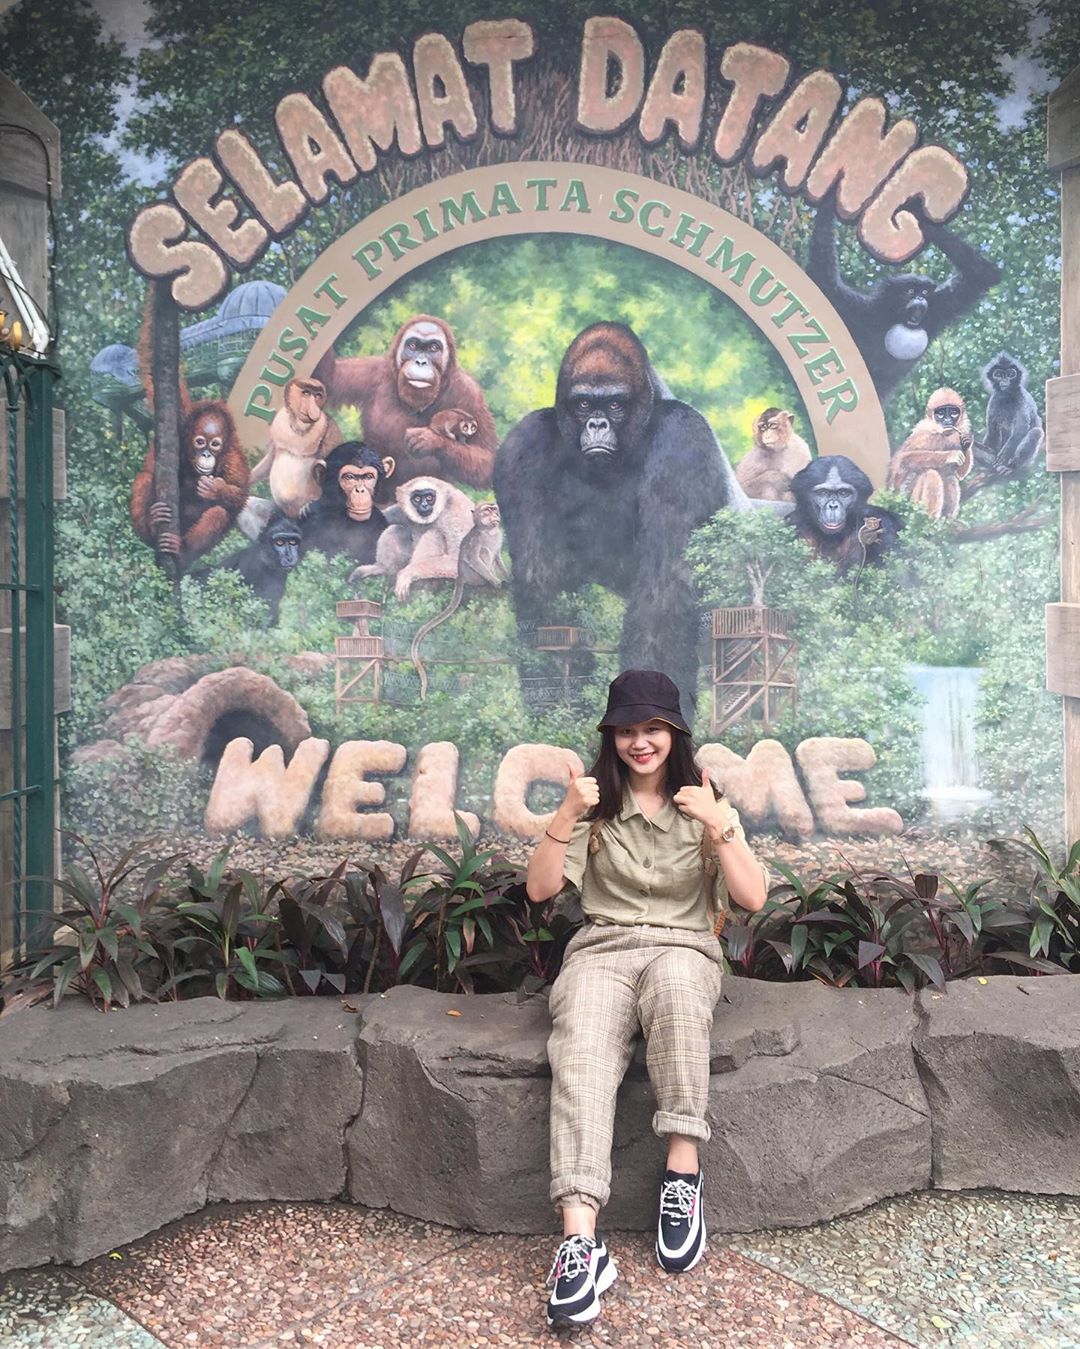 Pusat Primata Jakarta